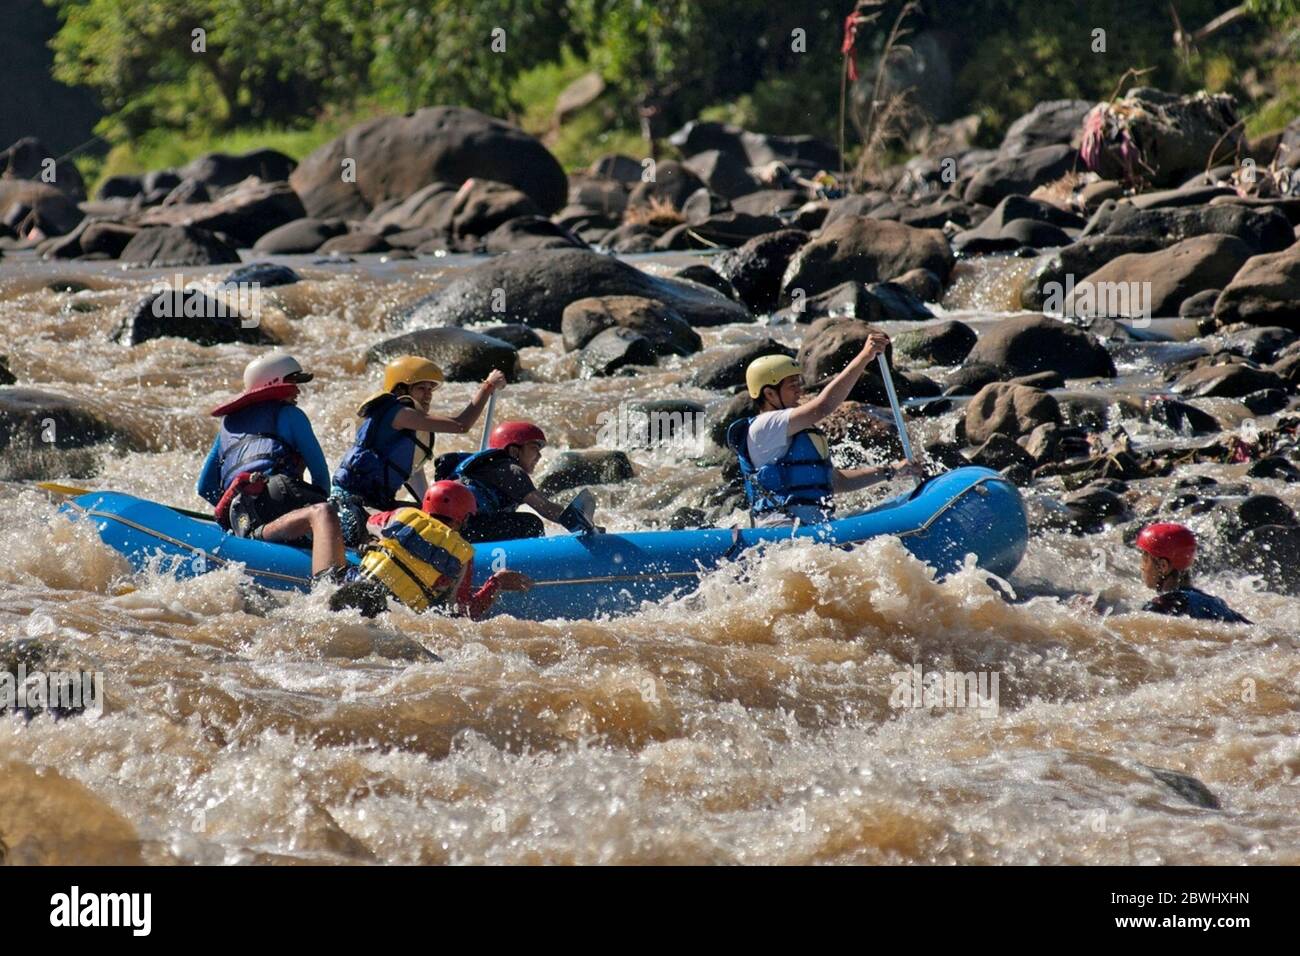 Estudiantes de la Universidad de Indonesia maniobrando el barco en un río rápido Cisadane en Java Occidental, Indonesia, practicando escenarios de rescate en una posible situación de emergencia como parte de Mapala UI - el club de aventura al aire libre de la universidad - programa de entrenamiento para aprendices. Foto de archivo (2009). Foto de stock